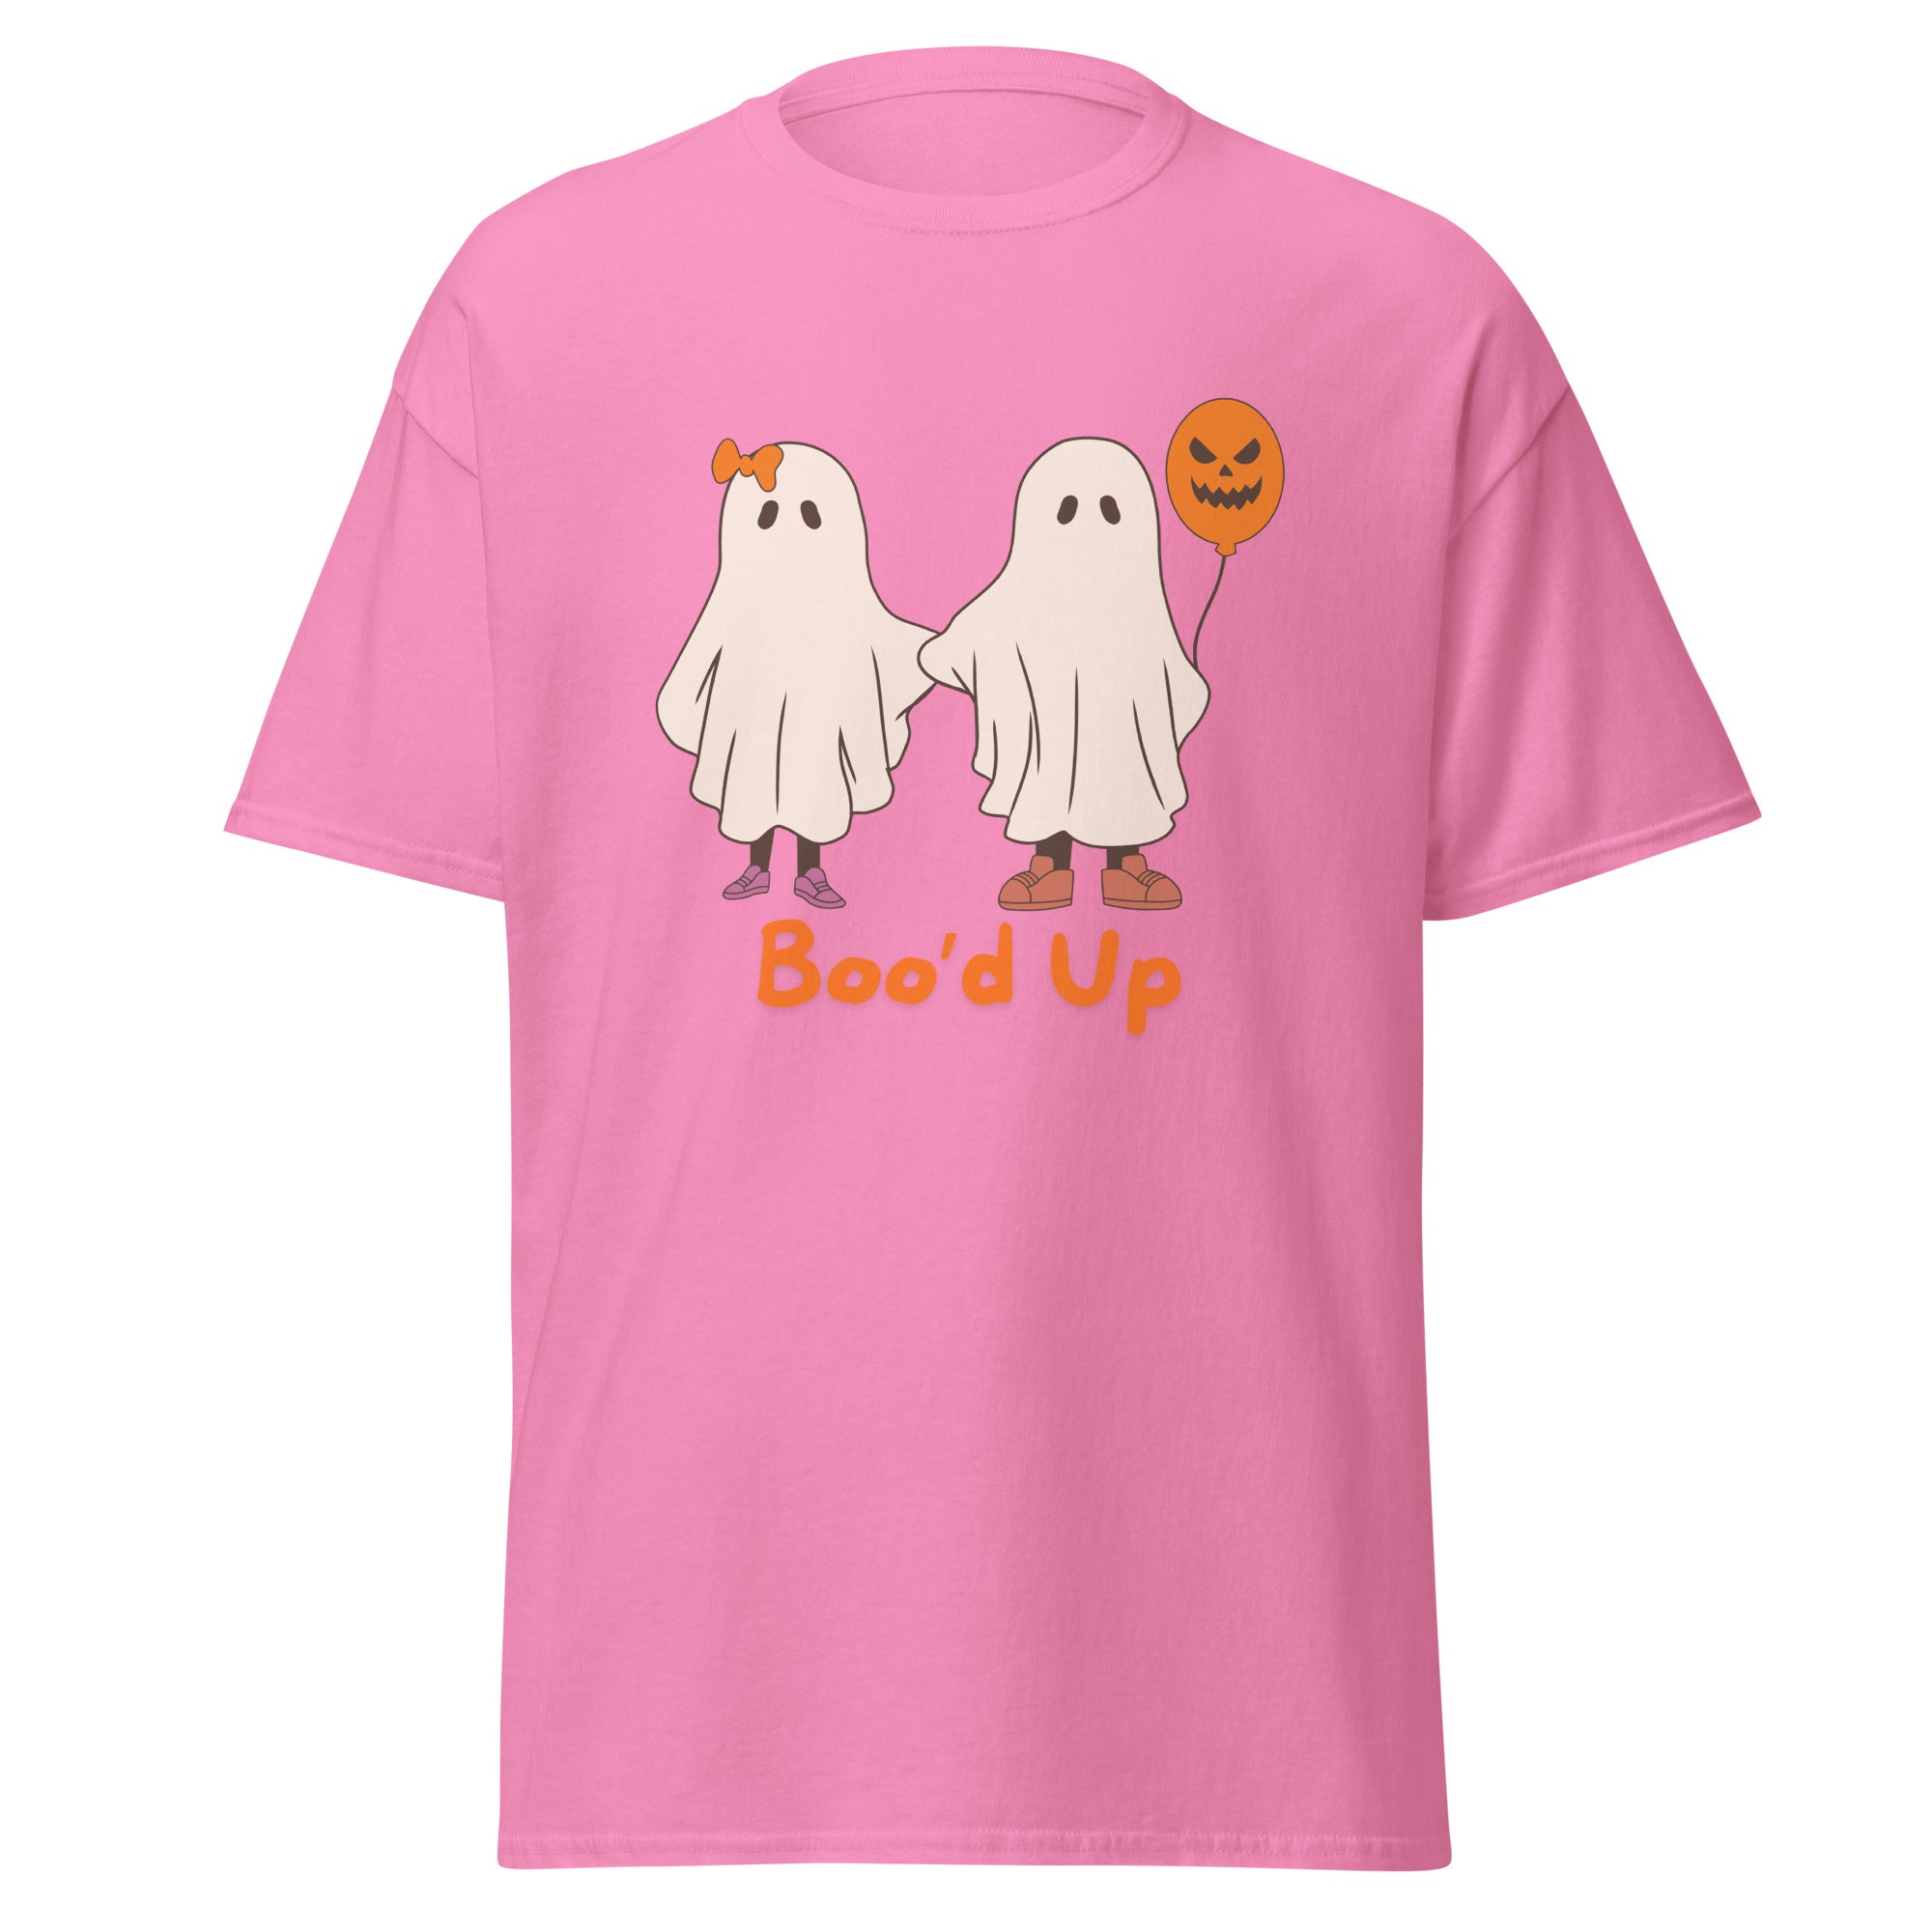 Boo'd Up Halloween T Shirts. Unisex